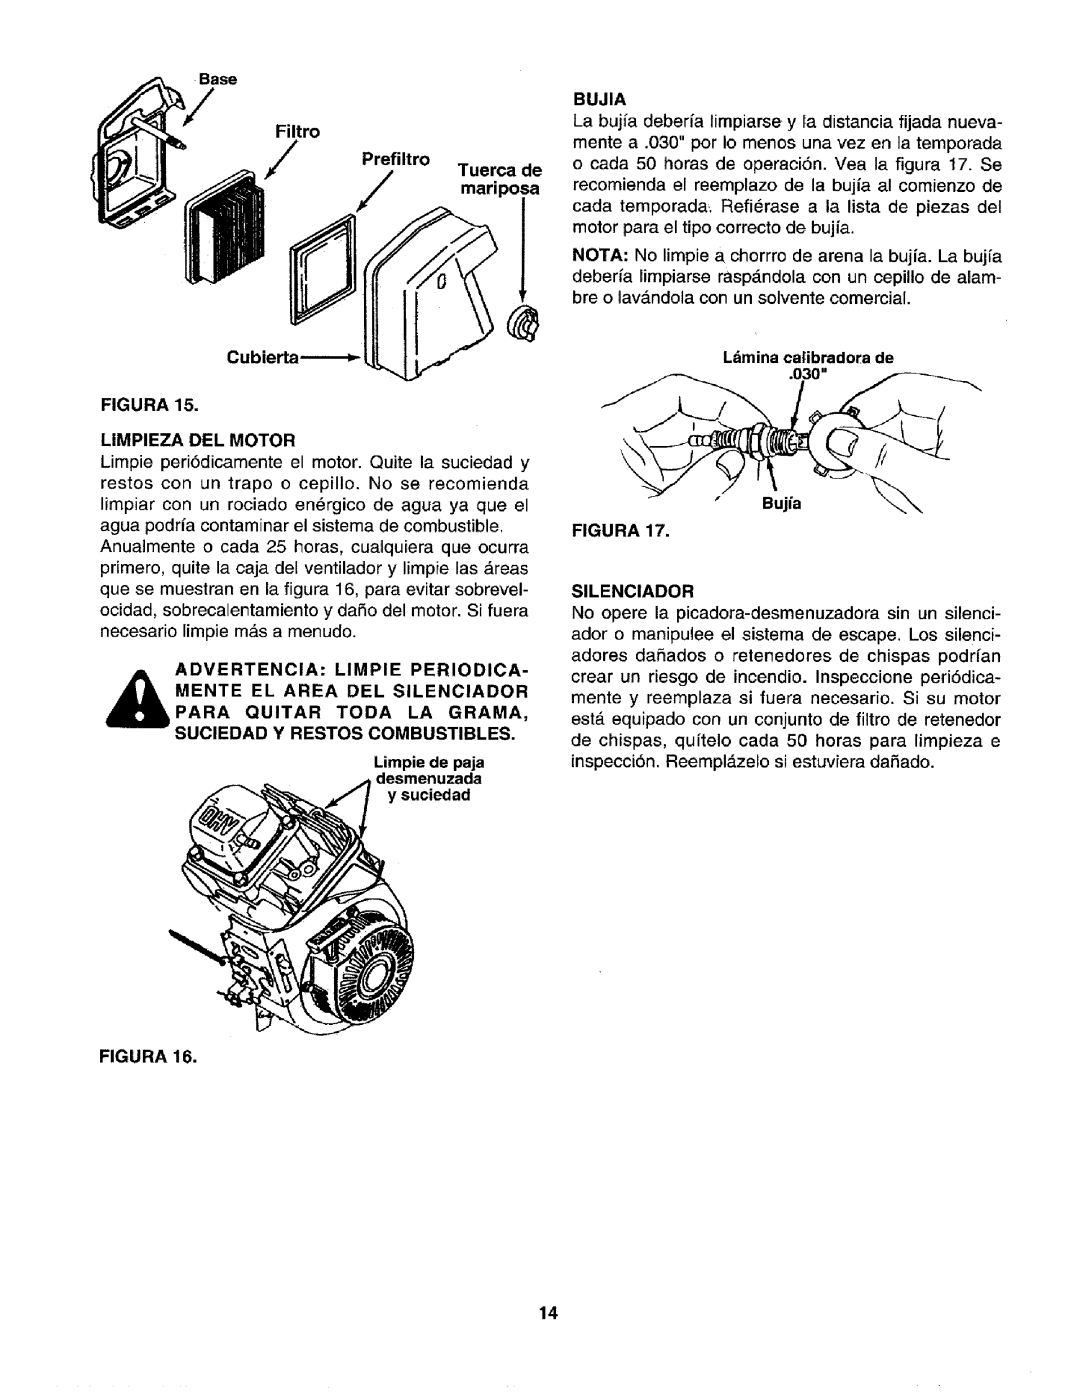 Craftsman 79585 manual Filtro, Prefiltro Tuerca de mariposa, Bujia, Cubierta_ FIGURA LIMPIEZA DEL MOTOR, Figura 